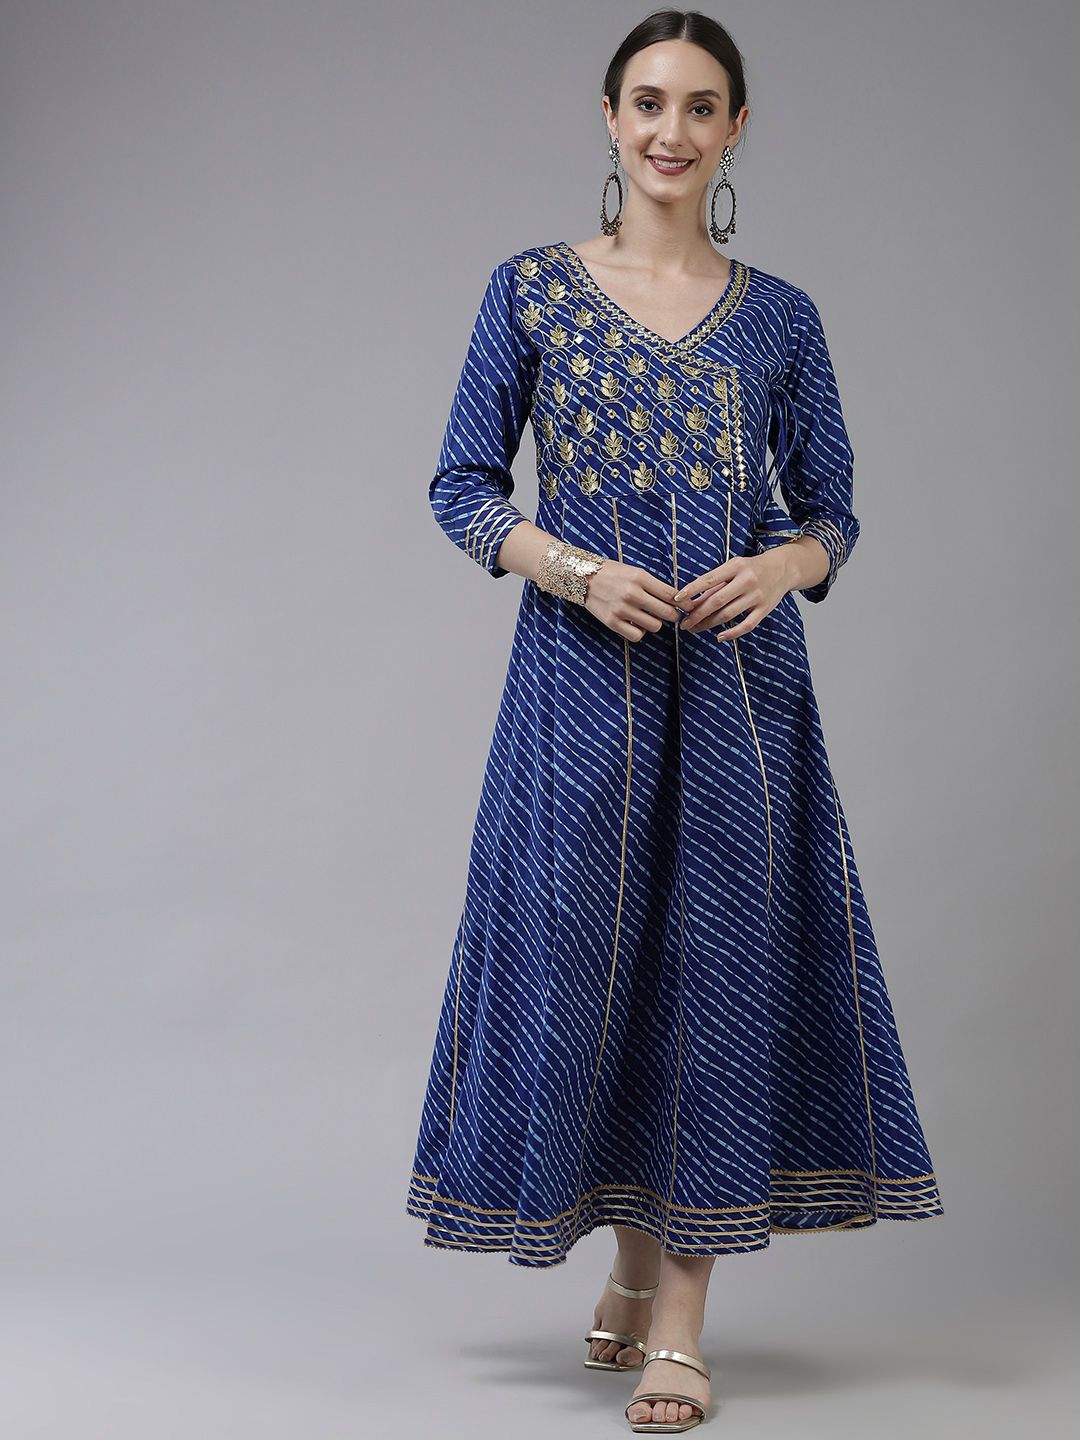 Yufta Blue Ethnic Motifs Embroidered Gotta Patti Pure Cotton Ethnic Maxi Dress Price in India